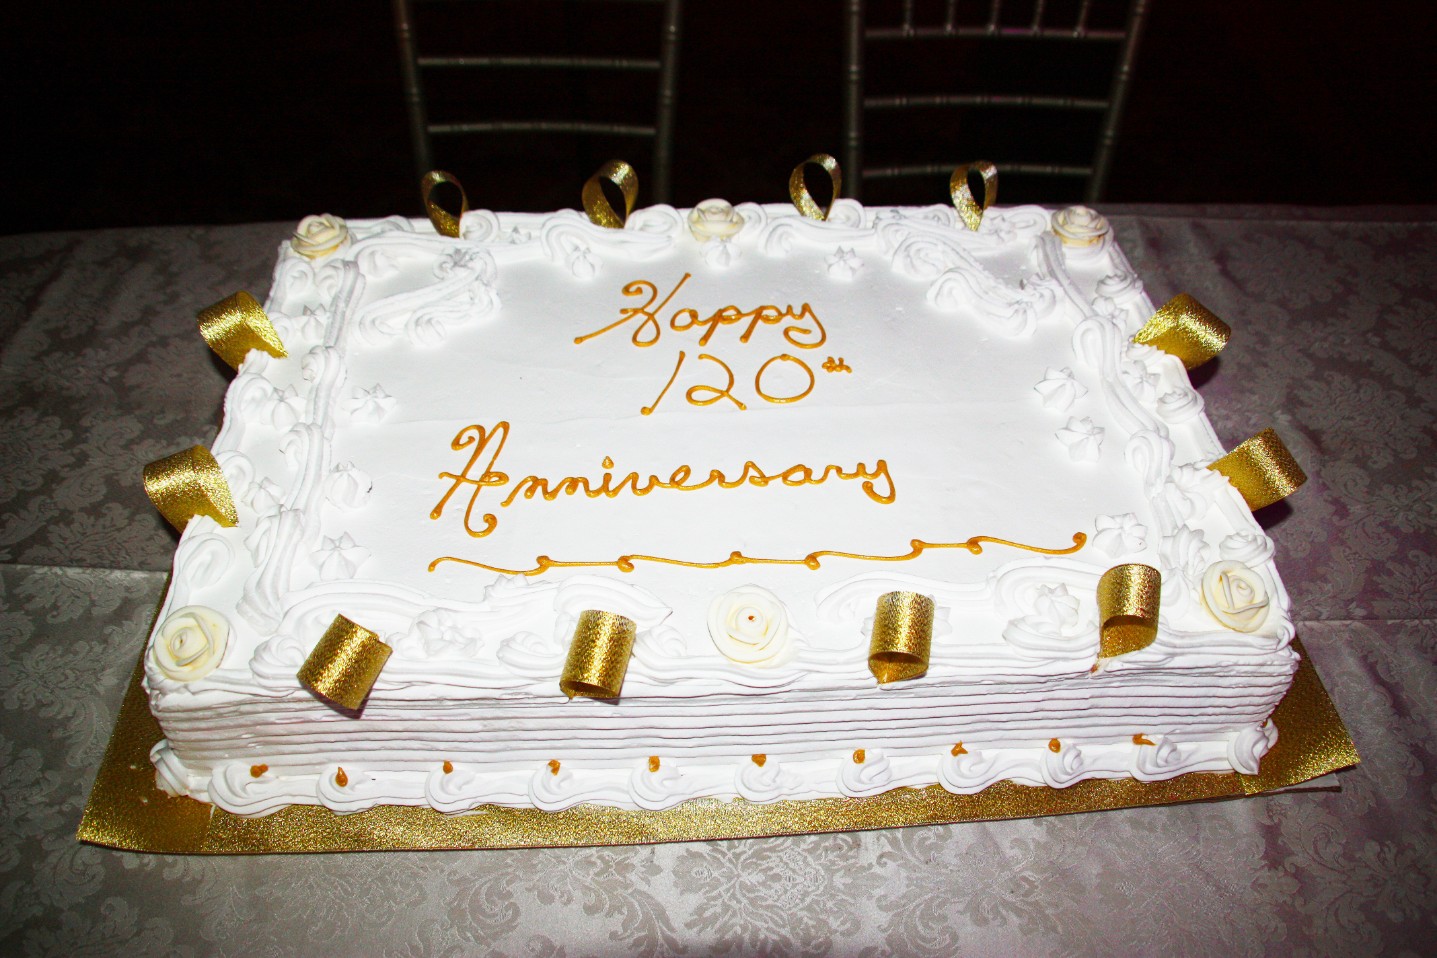 120th Anniversary Cake